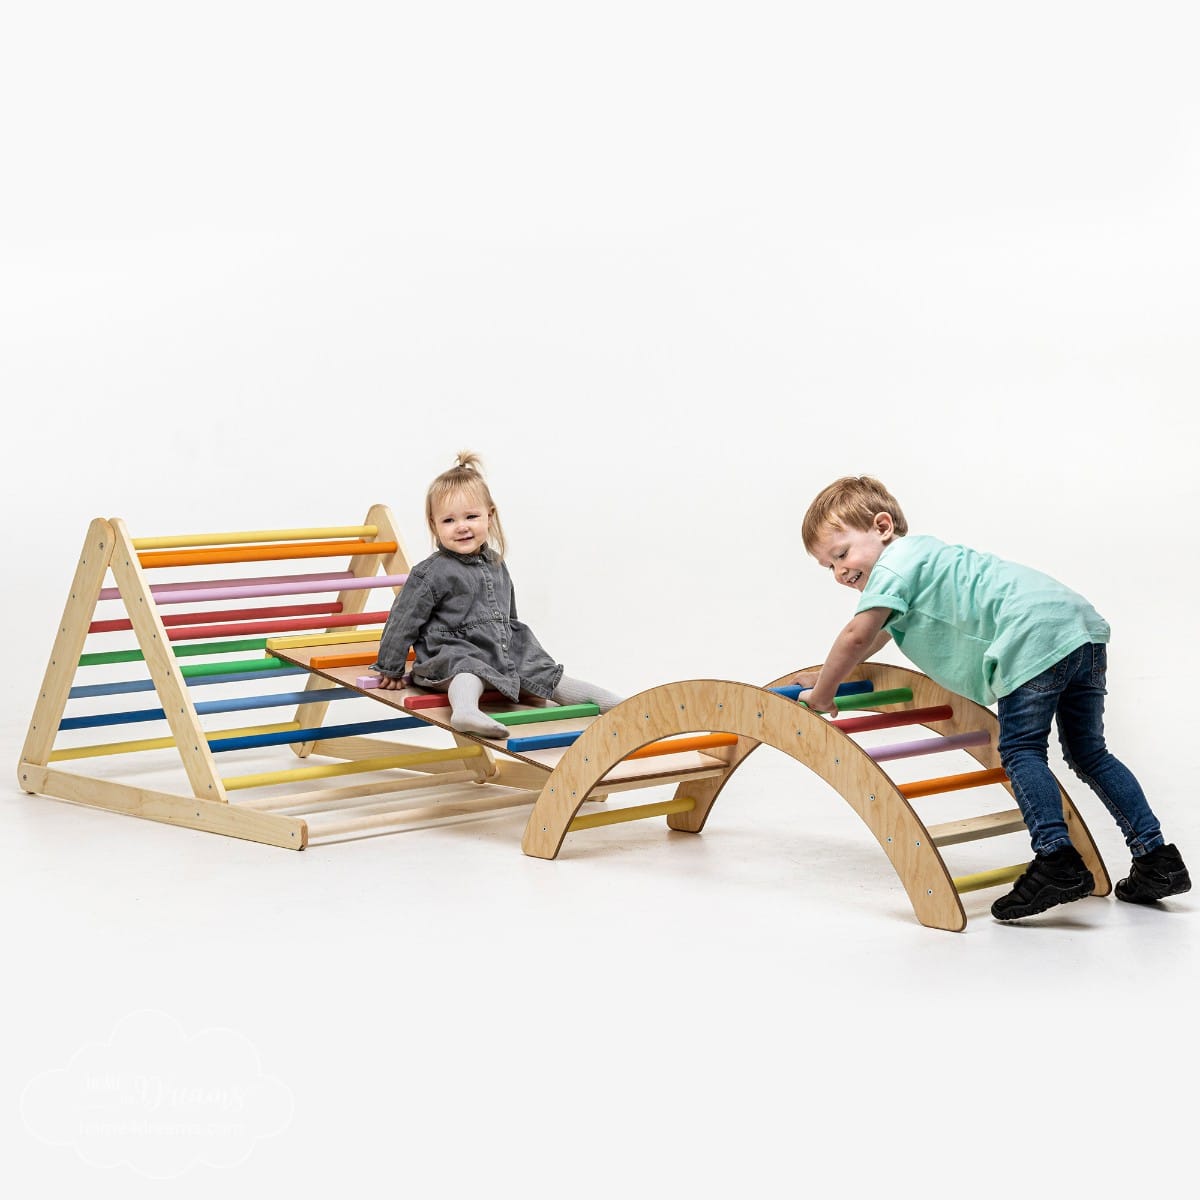 Tour de motricité en bois, jouets éducatifs pour enfants à partir de 1 an